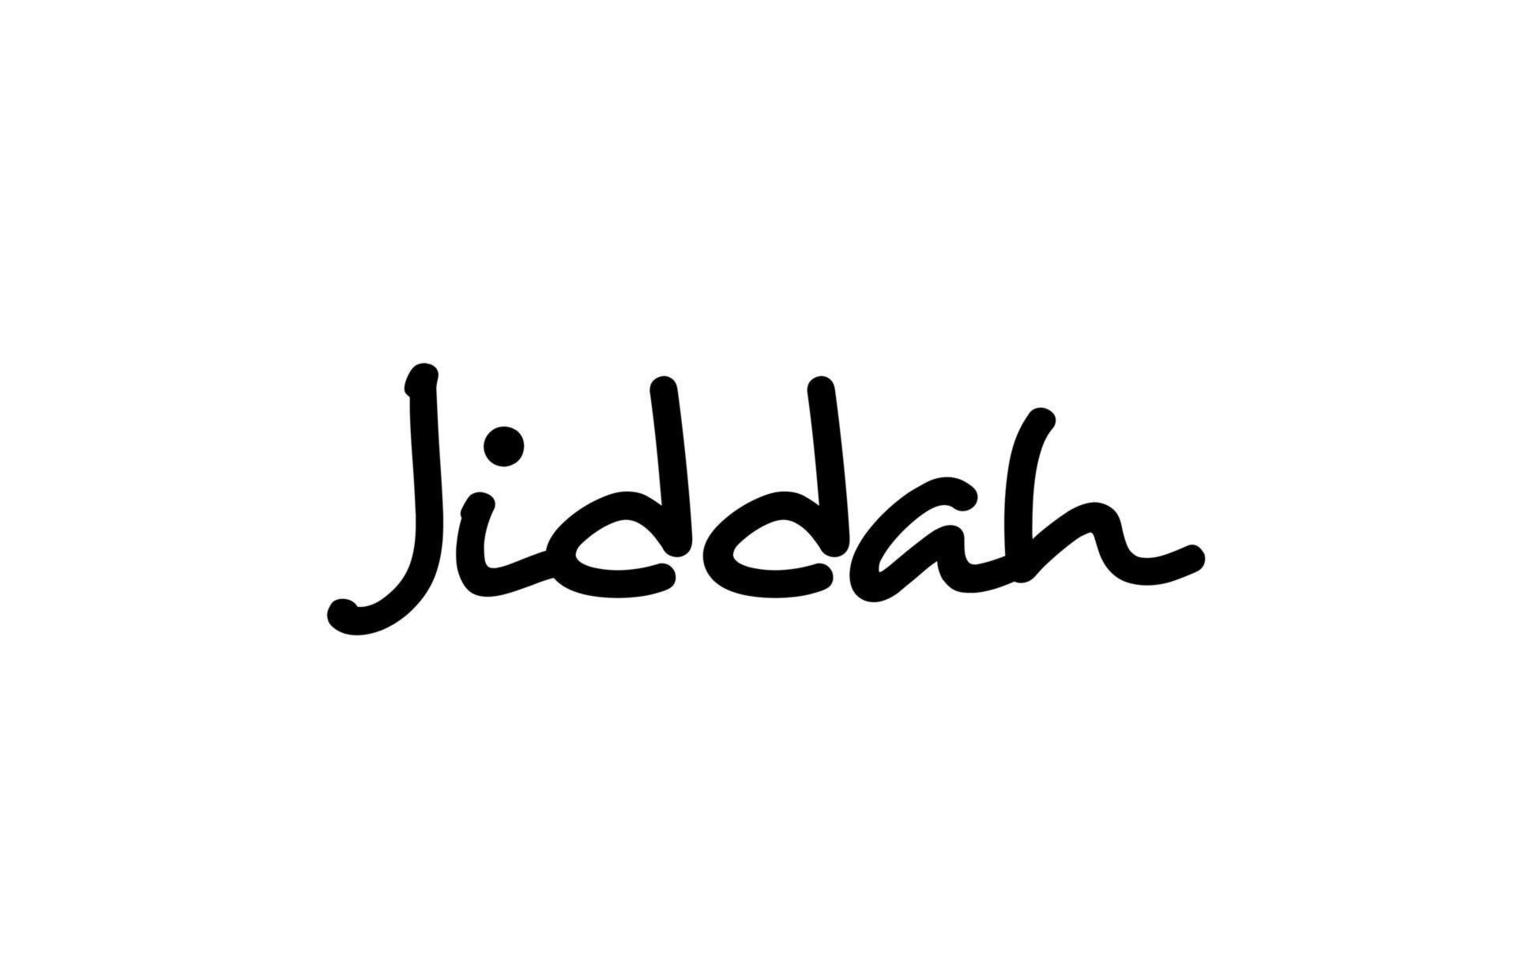 lettrage de main de texte de mot manuscrit de la ville de jiddah. texte de calligraphie. typographie en couleur noire vecteur